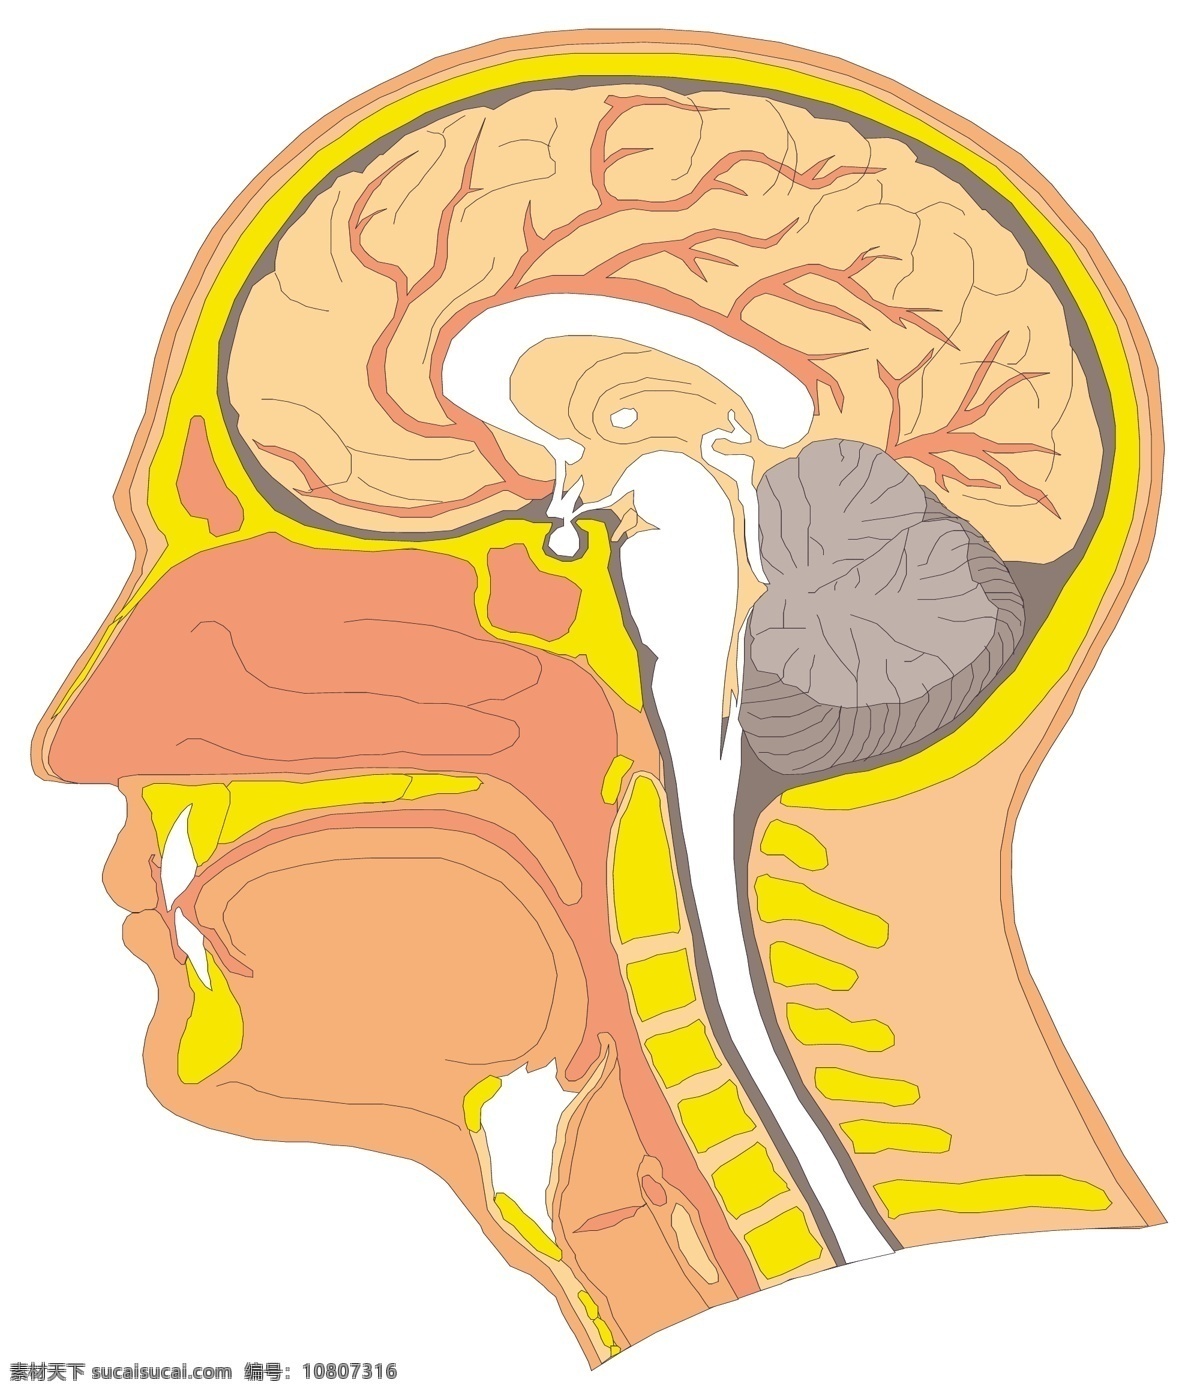 头颅 大脑 医用模型 矢量素材 eps0107 设计素材 结构模型 医疗卫生 矢量图库 白色